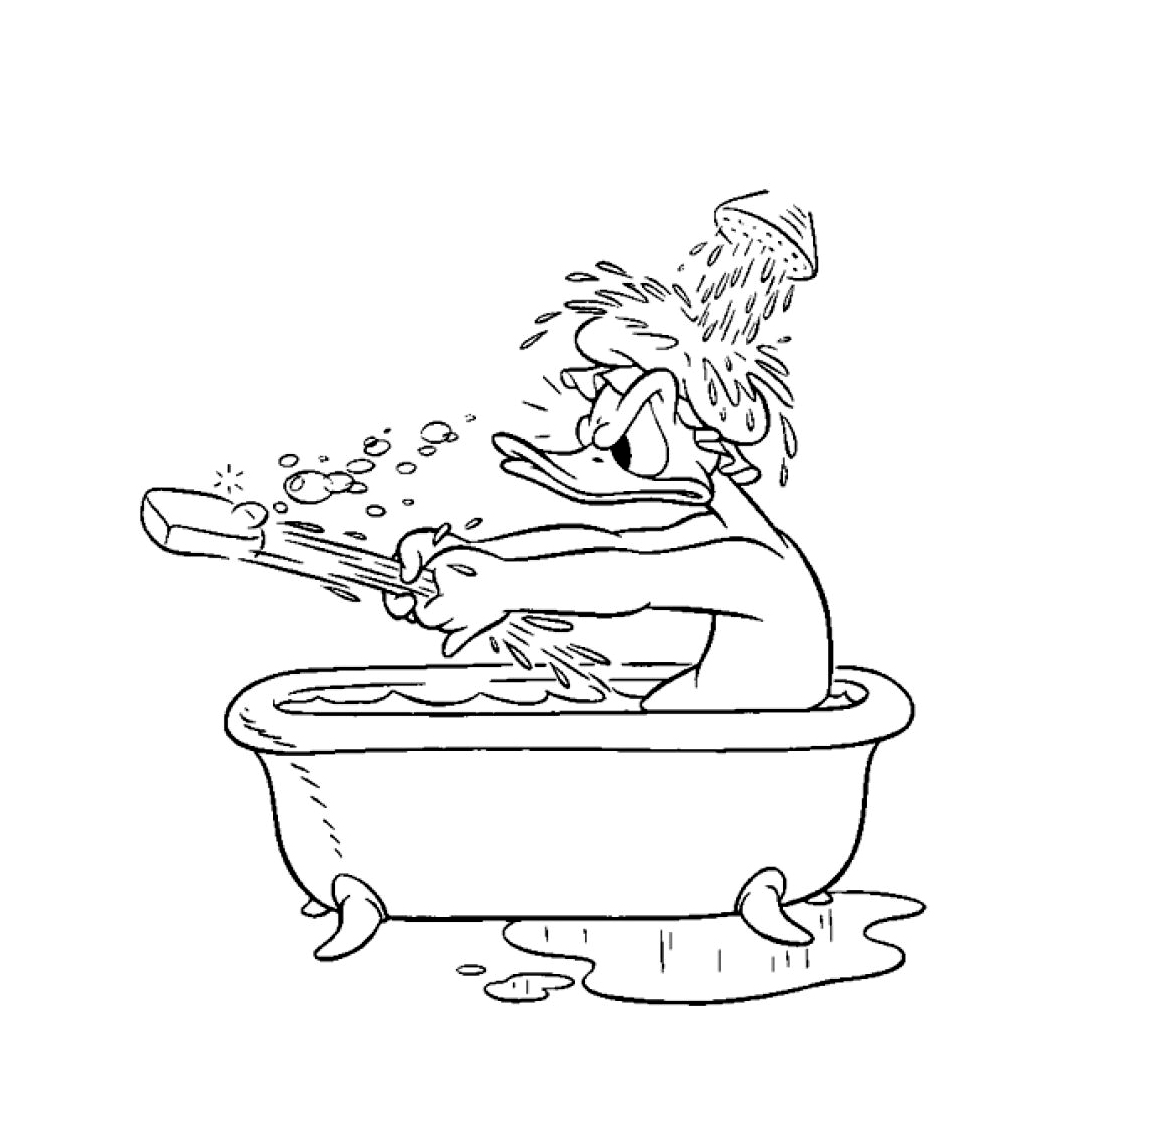 Donald dans son bain